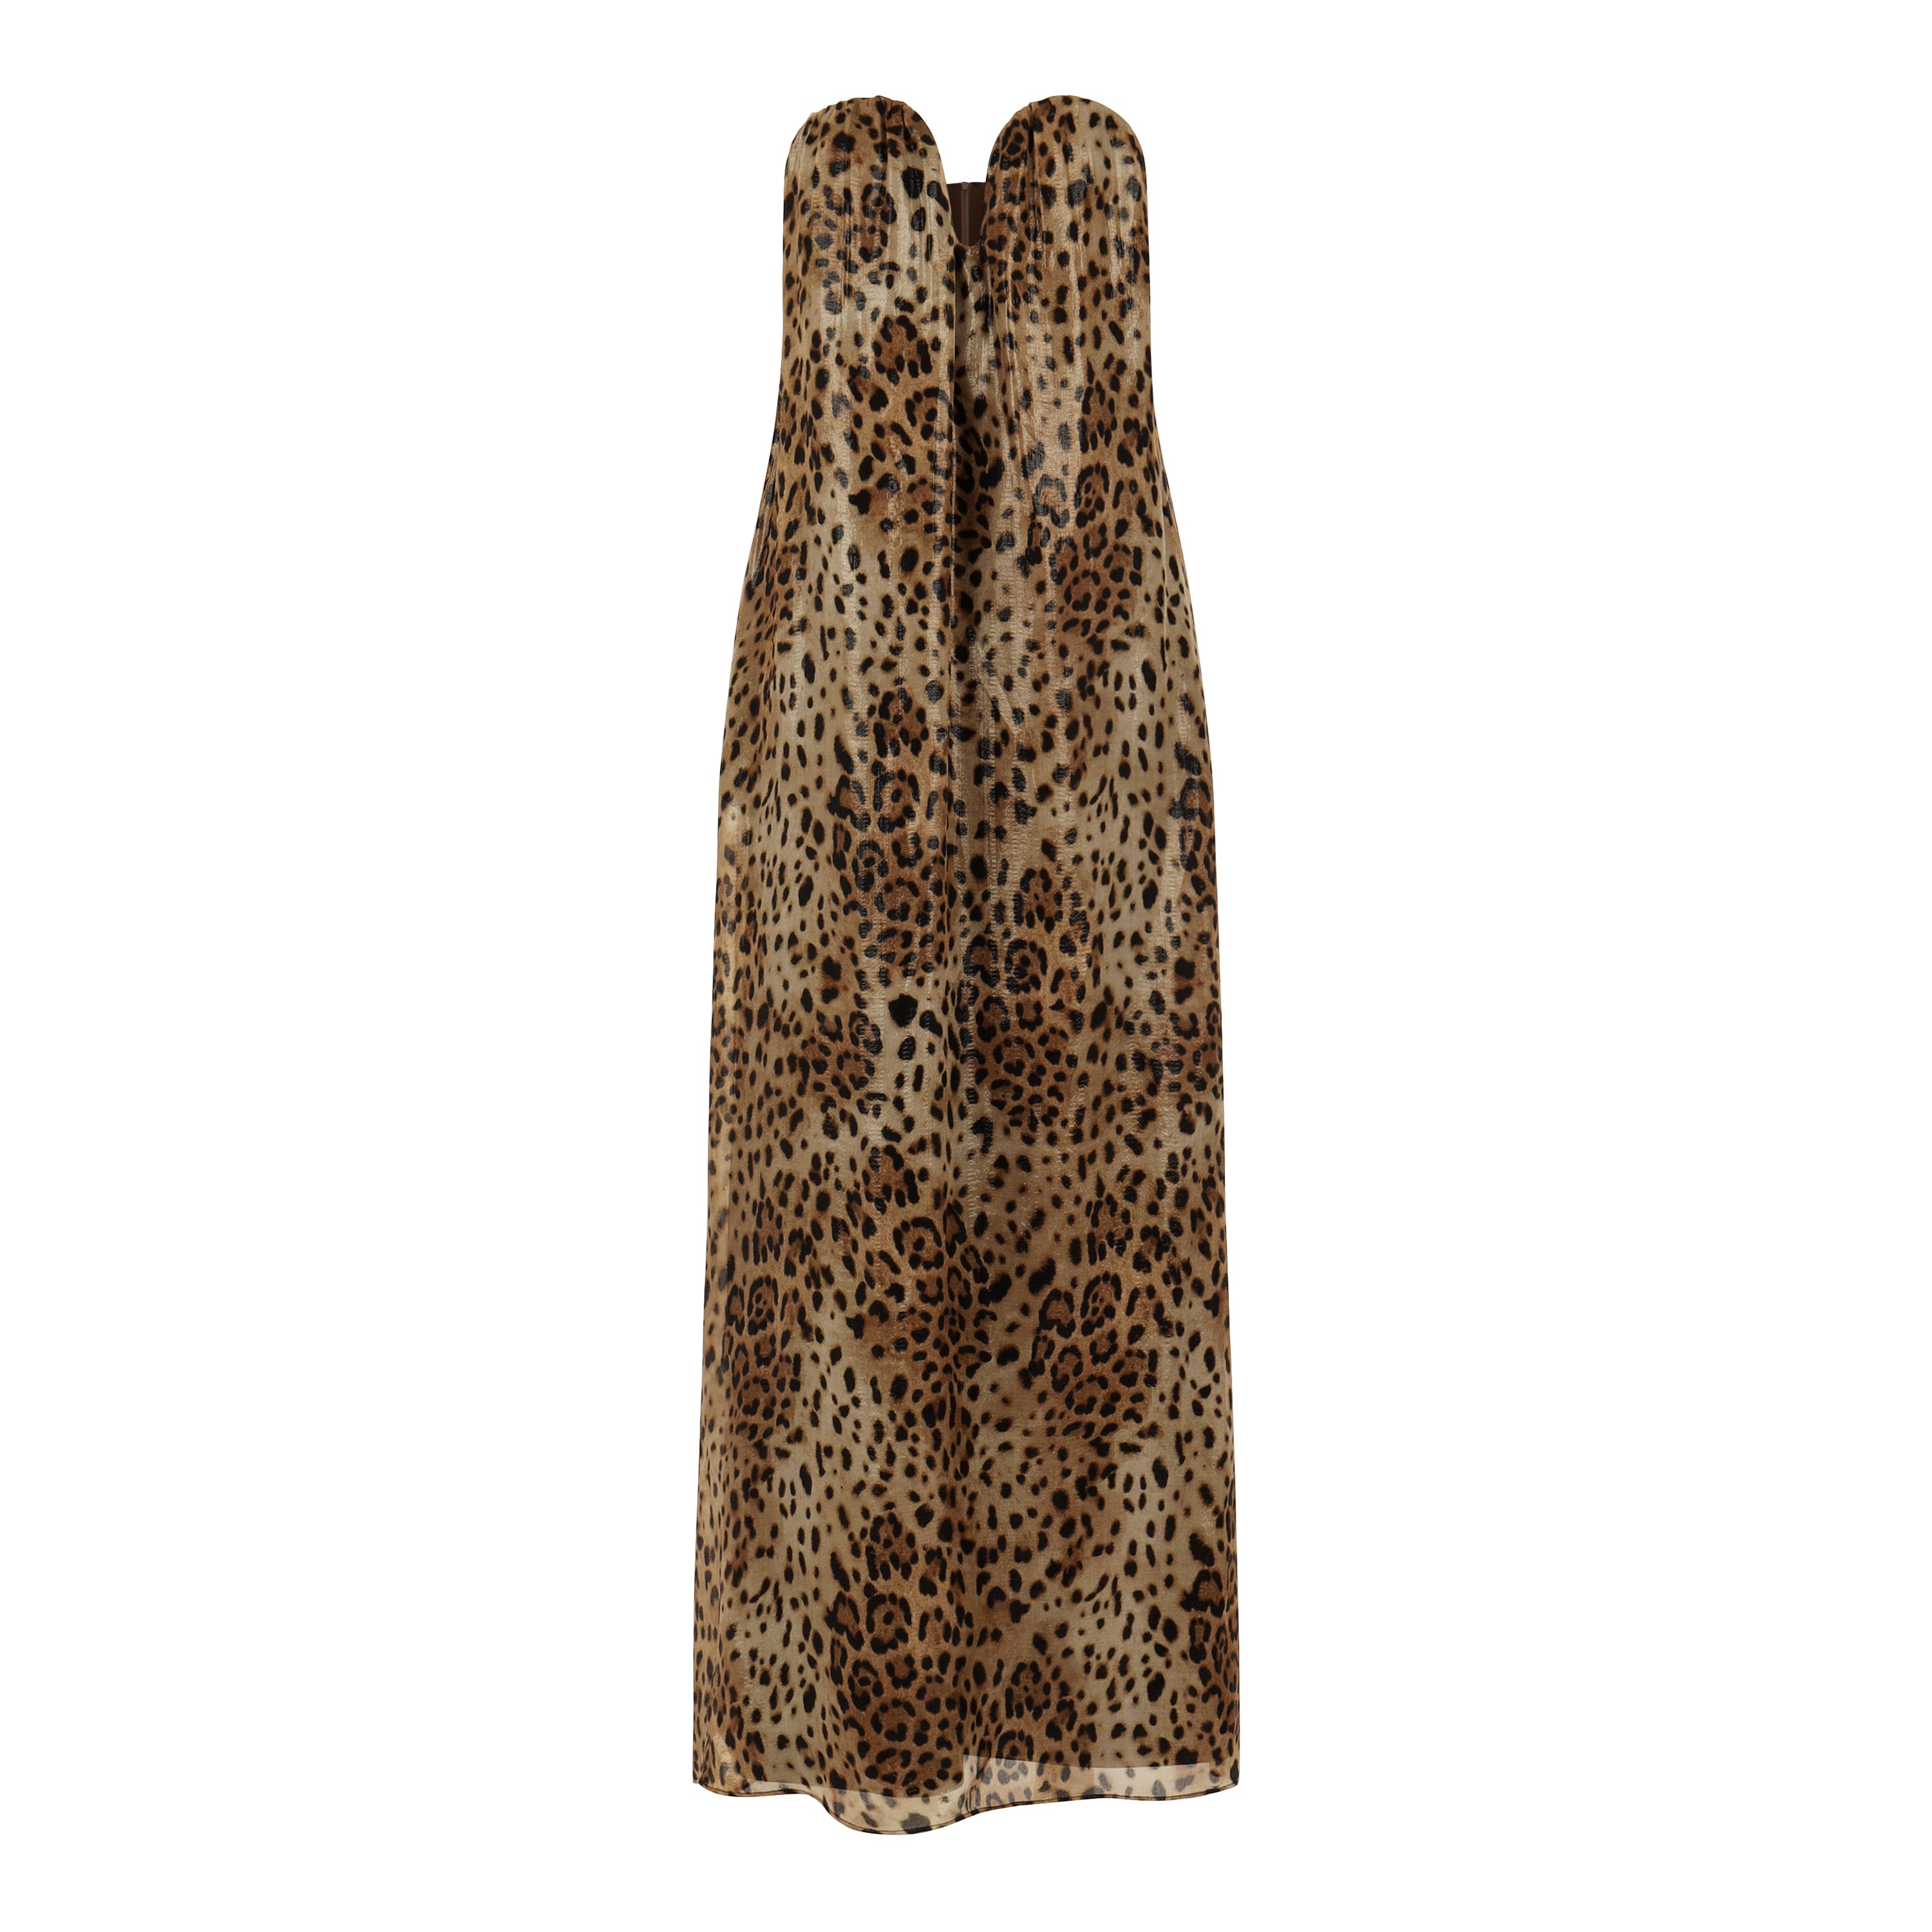 Leopard Strapless Hidden Corset Dress